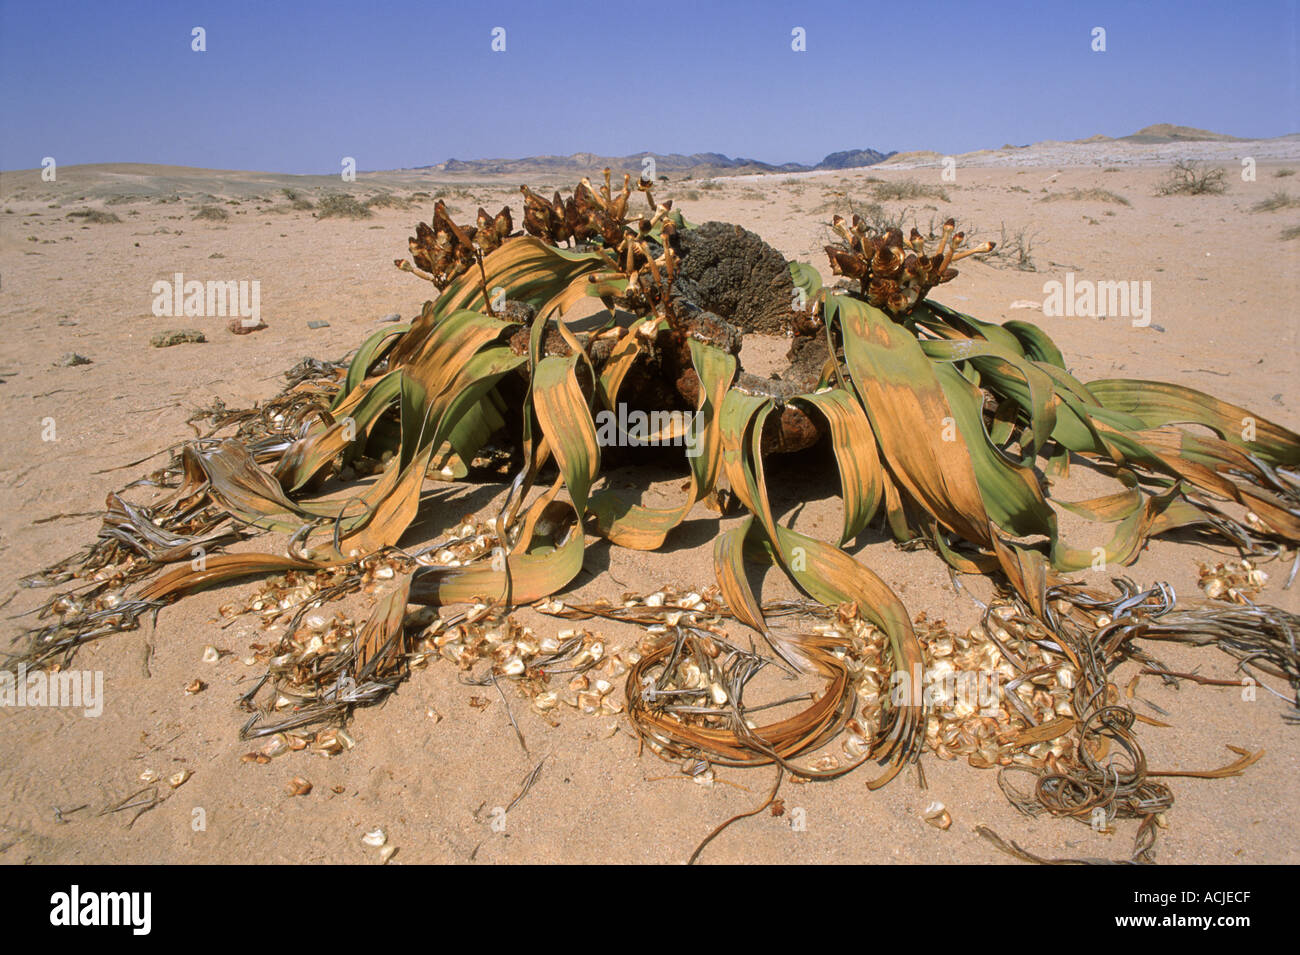 Welwitschia plant Welwitschia mirabilis two leaves only Namib Naukluft desert Namibia Southern Africa Stock Photo